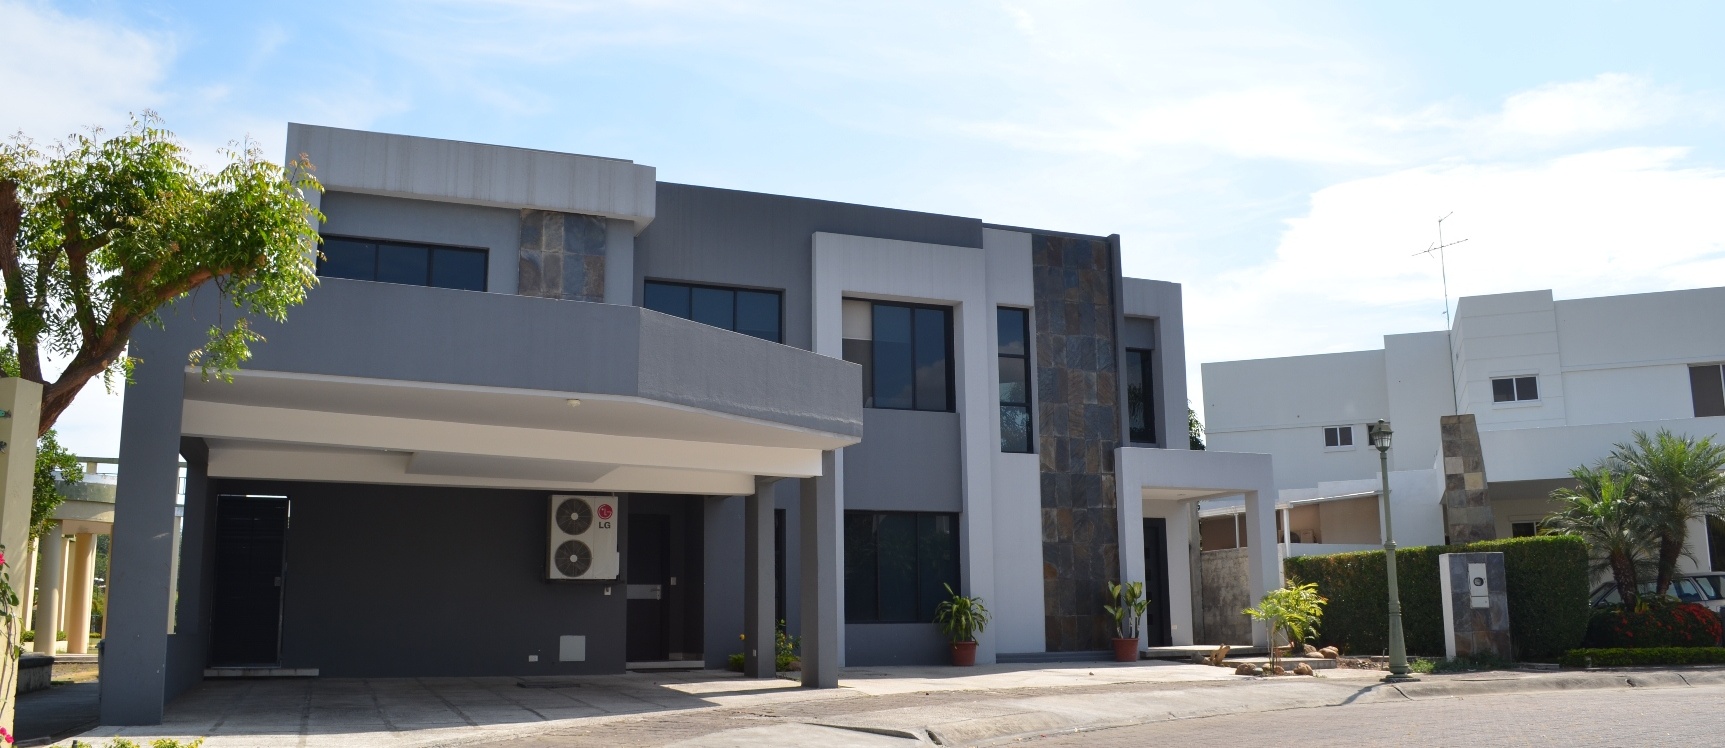 GeoBienes - Casa en Venta en urbanización Portofino Km 11 Vía a la Costa    - Plusvalia Guayaquil Casas de venta y alquiler Inmobiliaria Ecuador